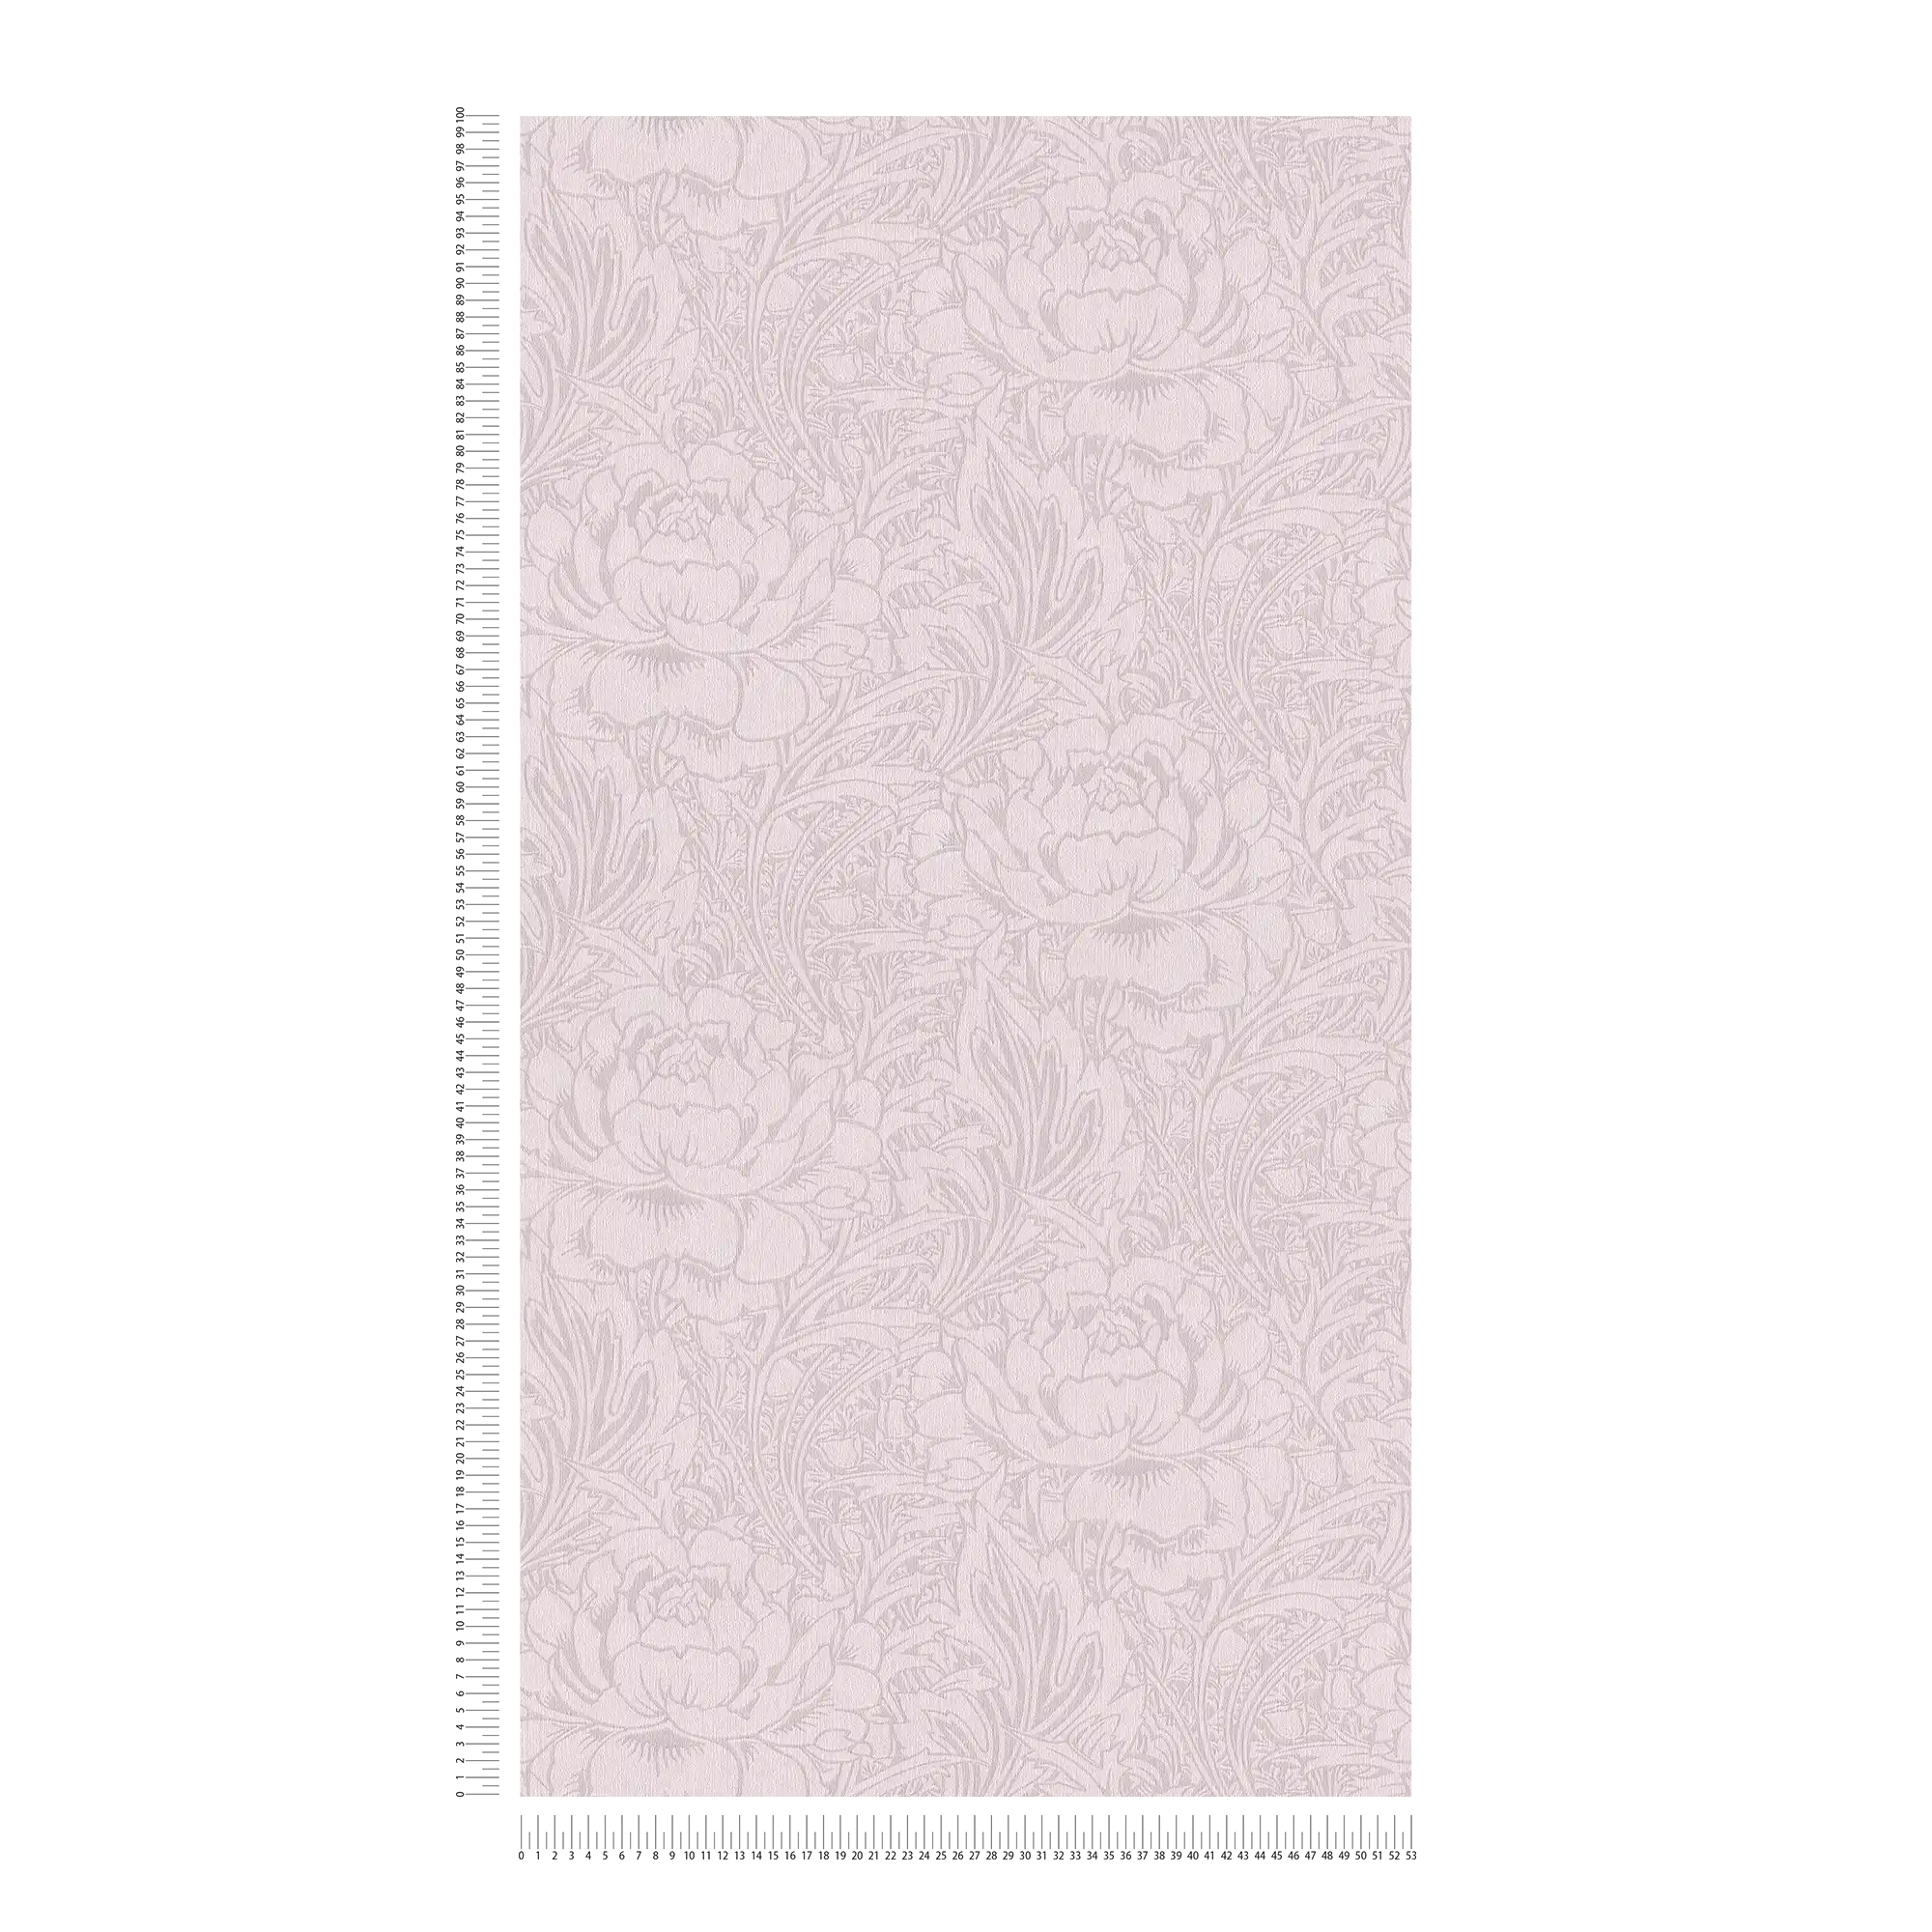             Papier peint floral motif Art nouveau, uni & mat
        